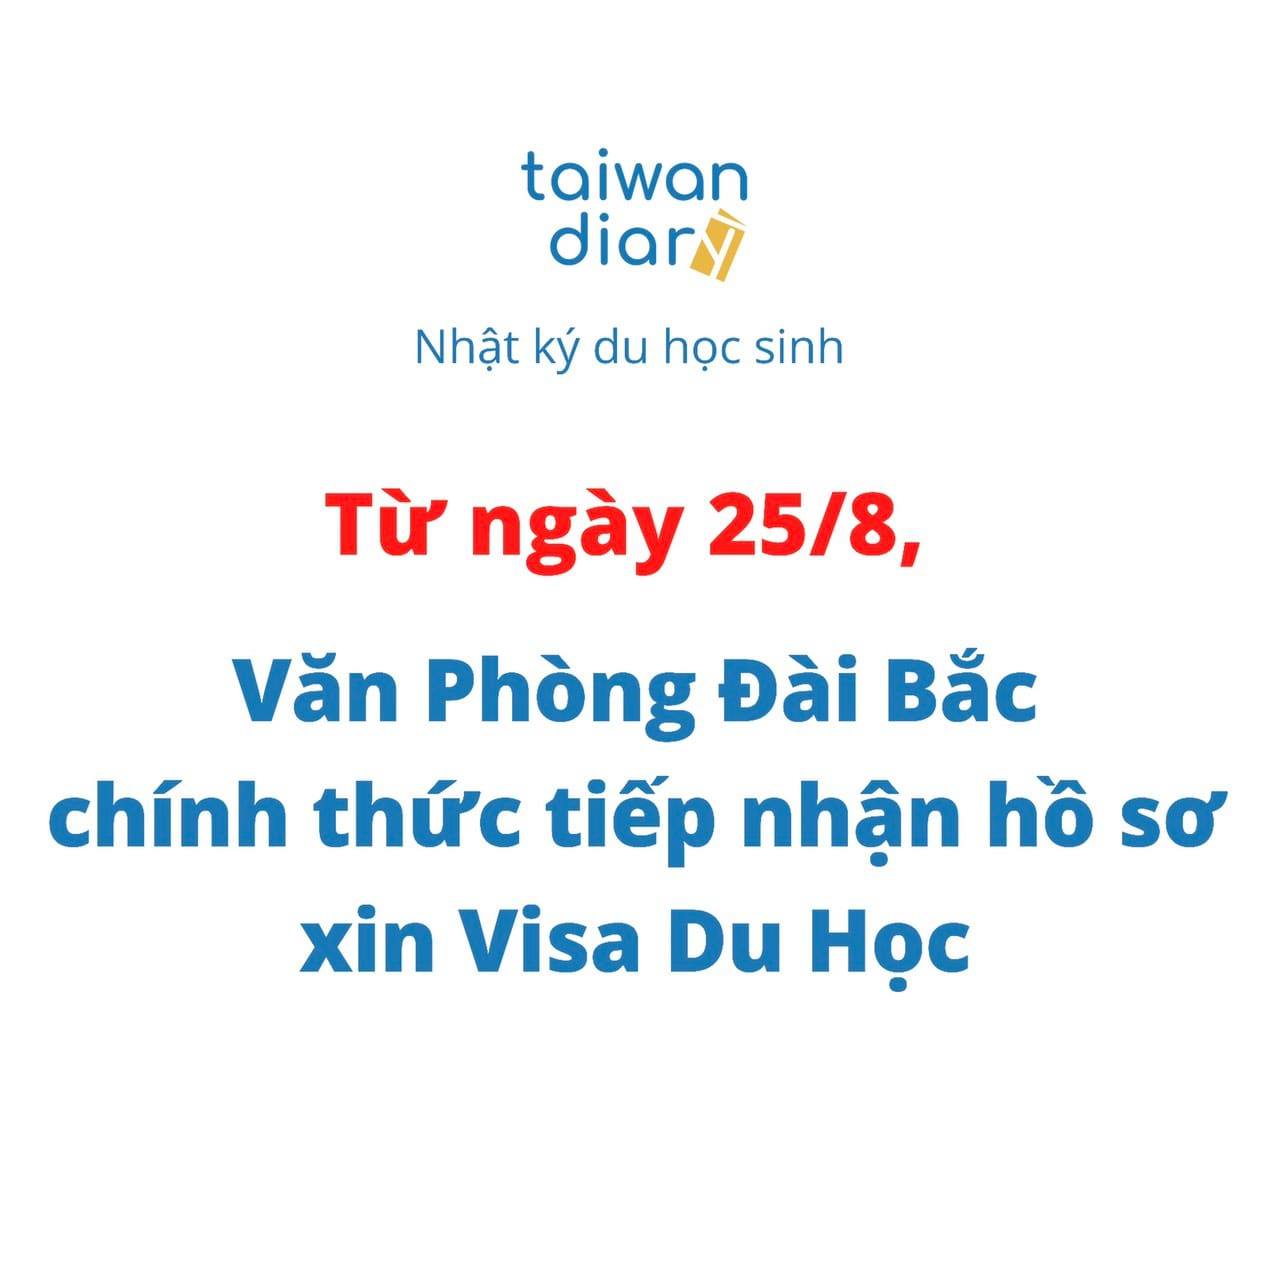 van phong dai bac nhan visa du hoc dai loan